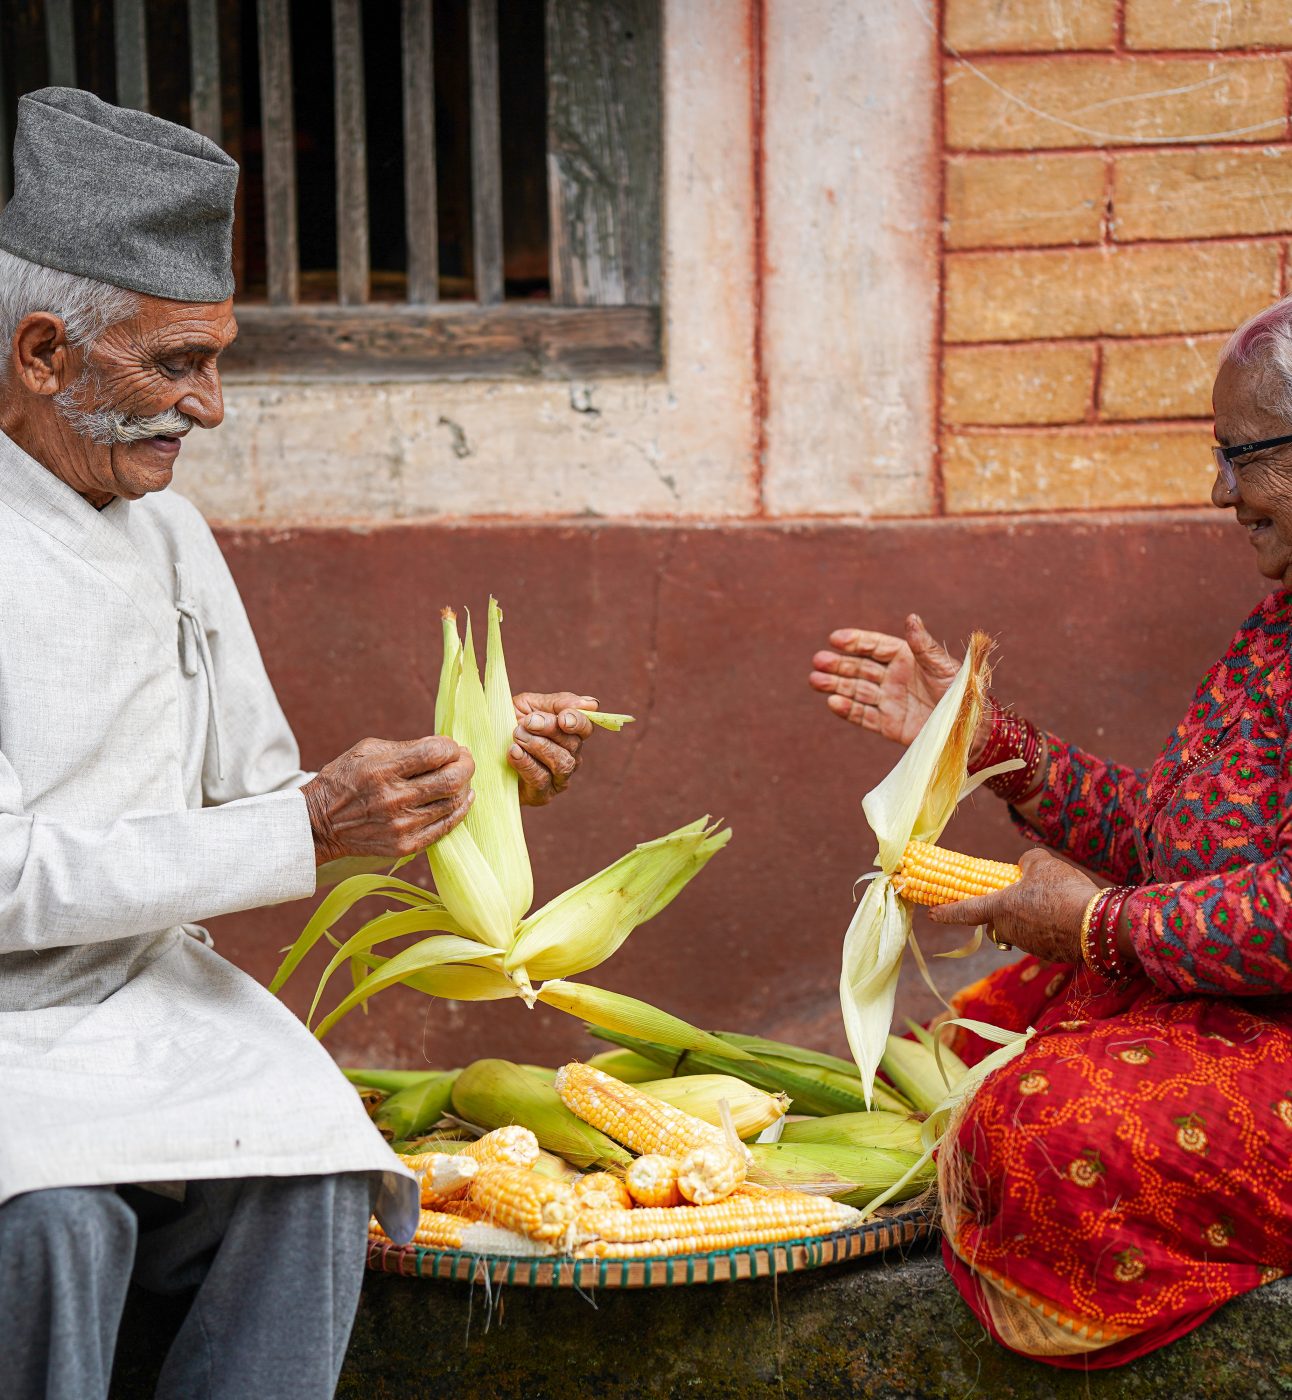 Older people in Nepal